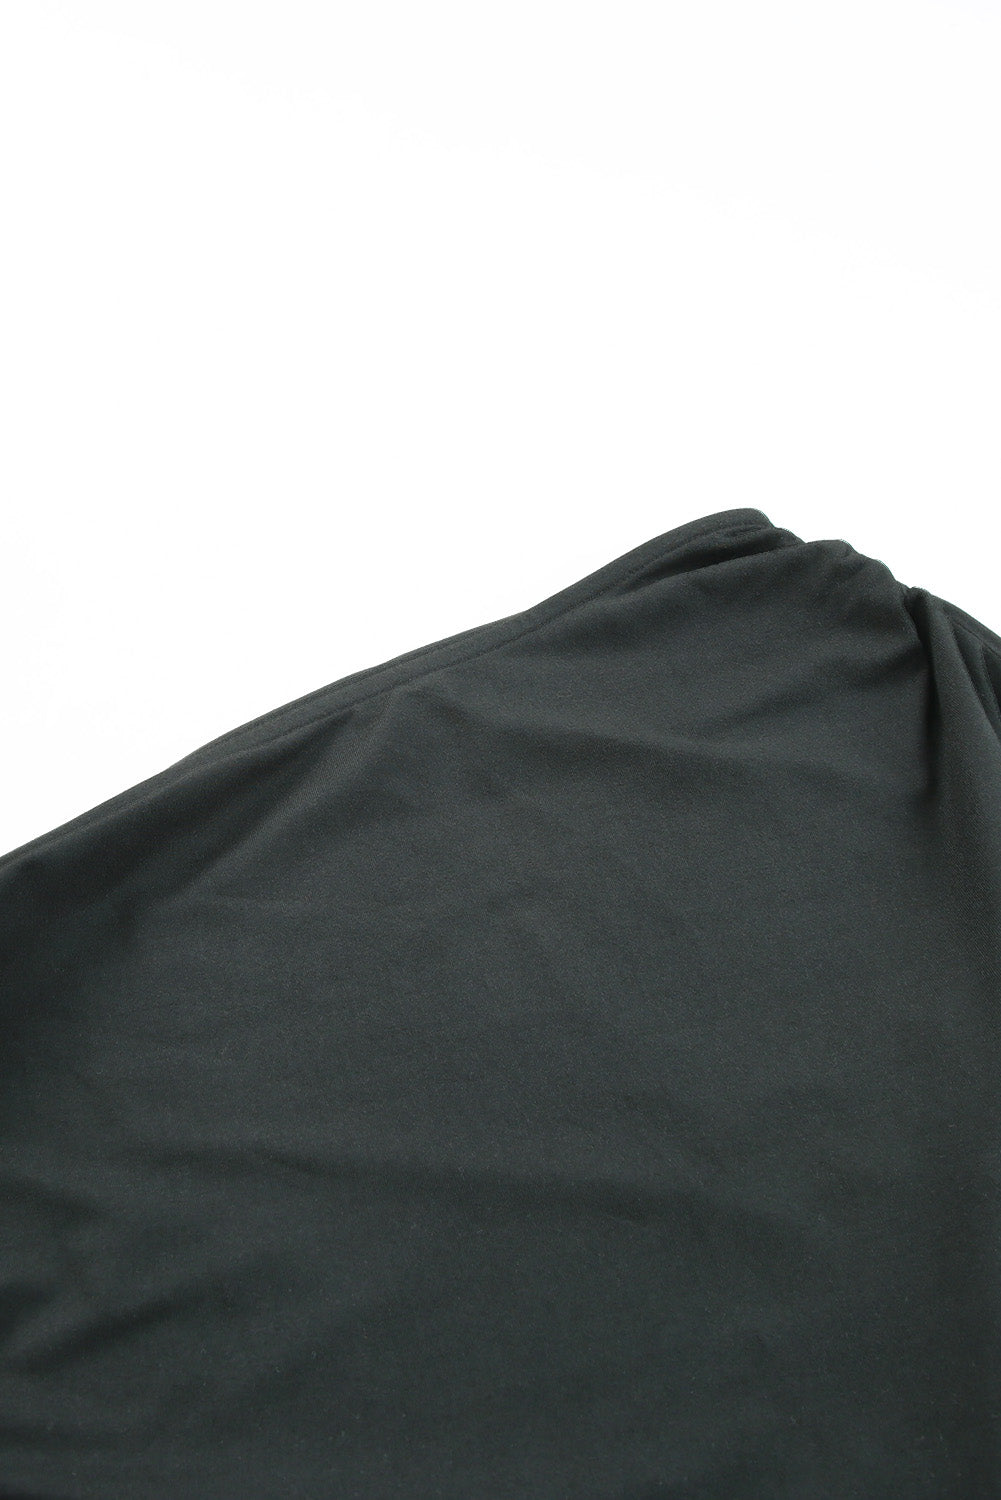 Schwarzes, kurzärmliges, figurbetontes Kleid mit One-Shoulder-Träger und Rüschen